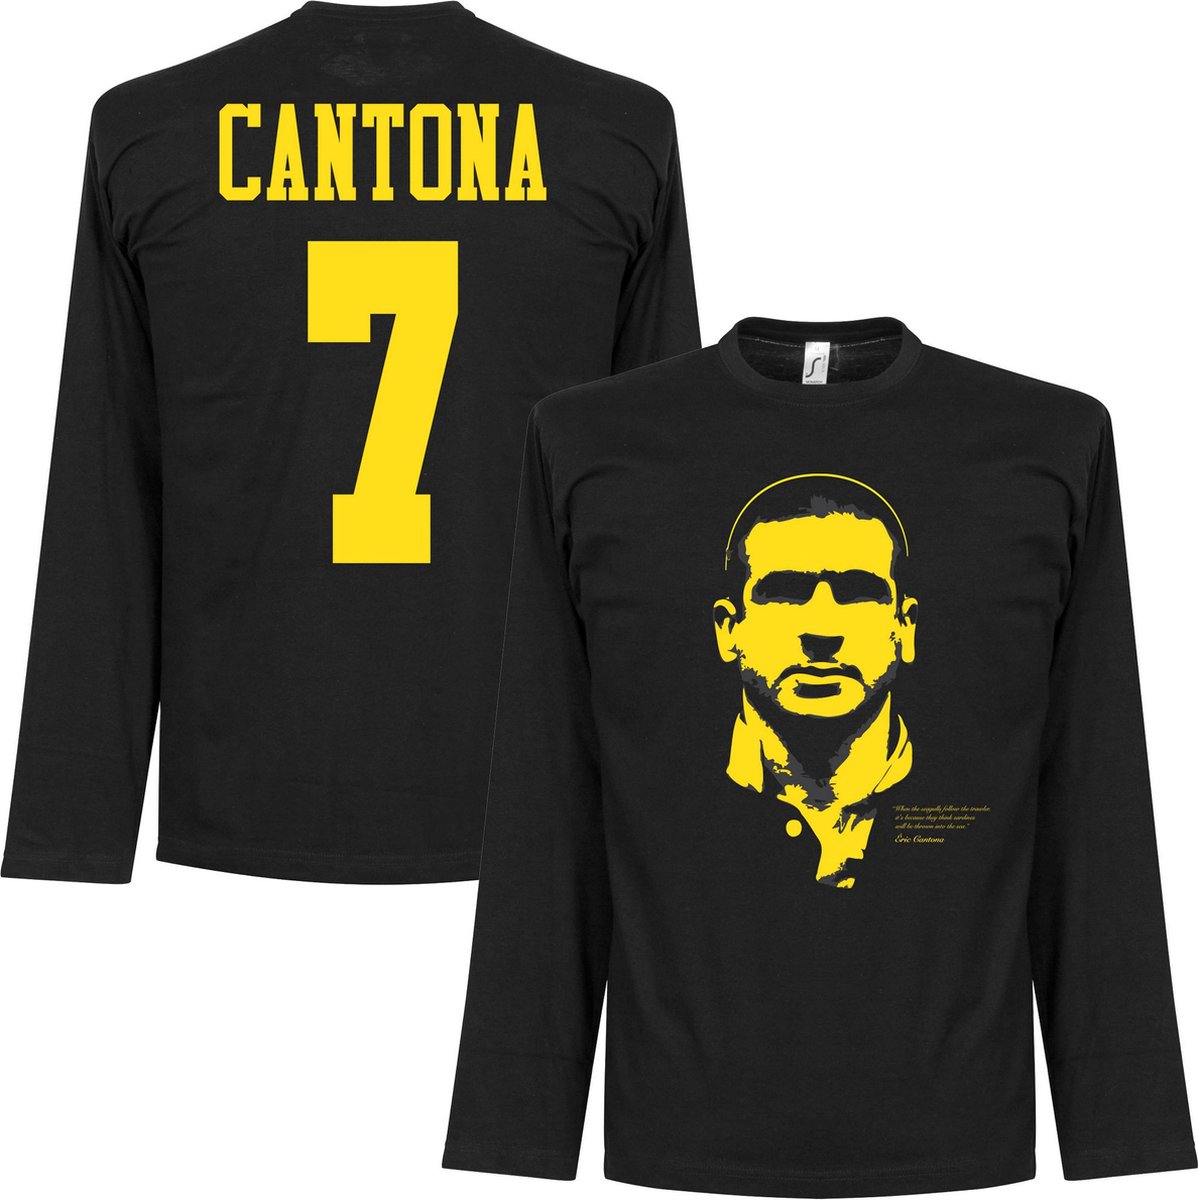 cantona black jersey